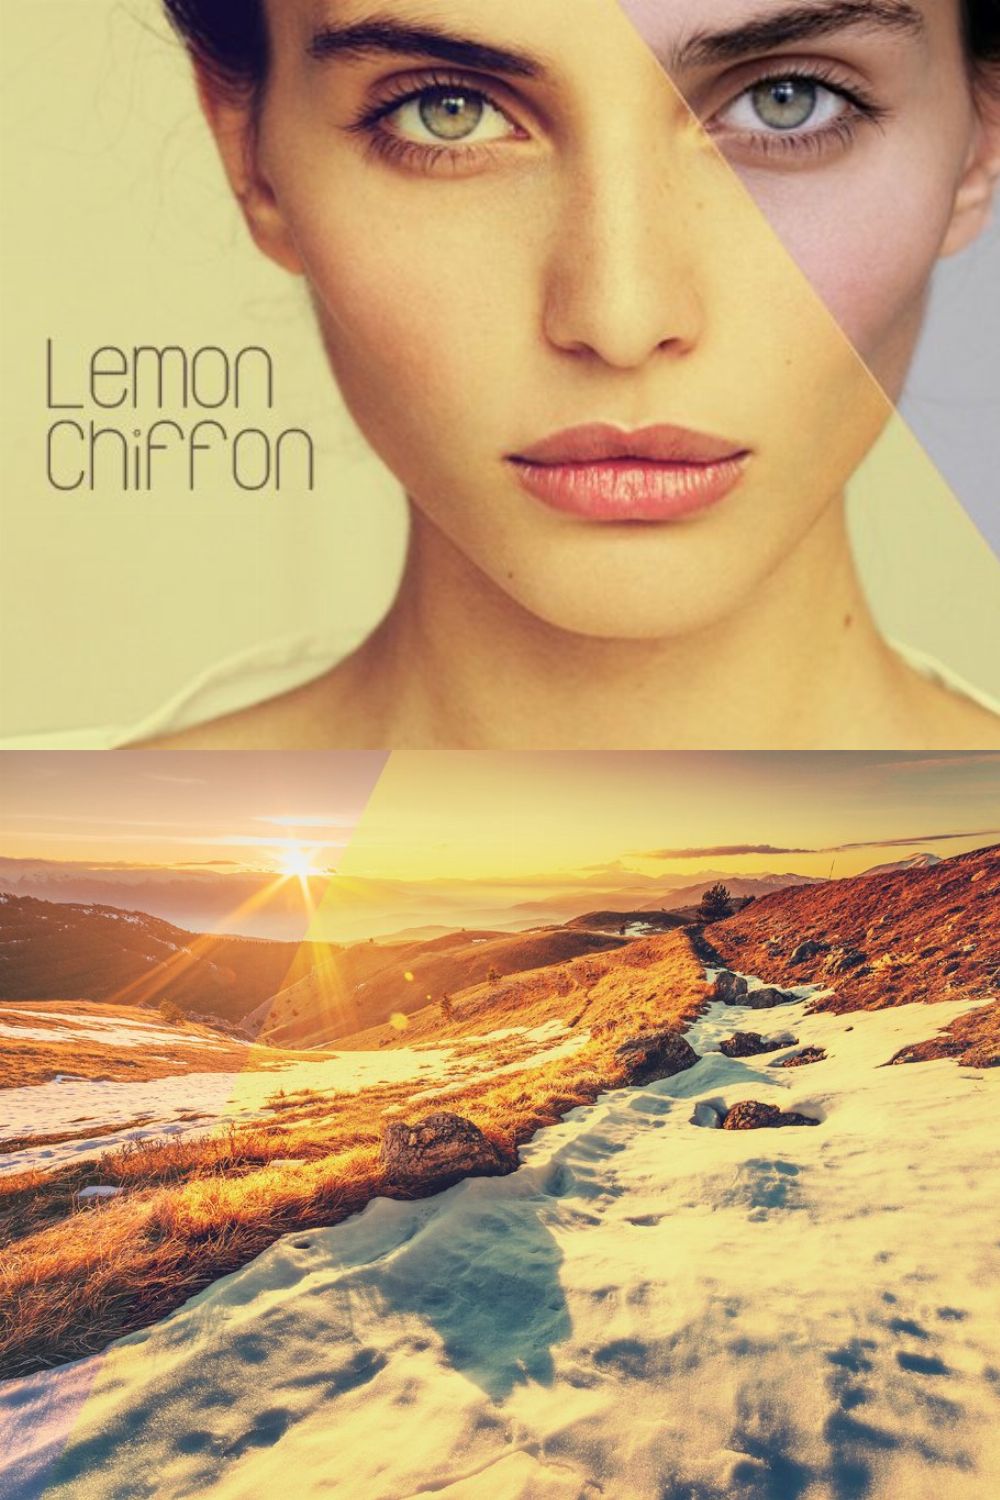 Lemon Chiffon | PS Action pinterest preview image.